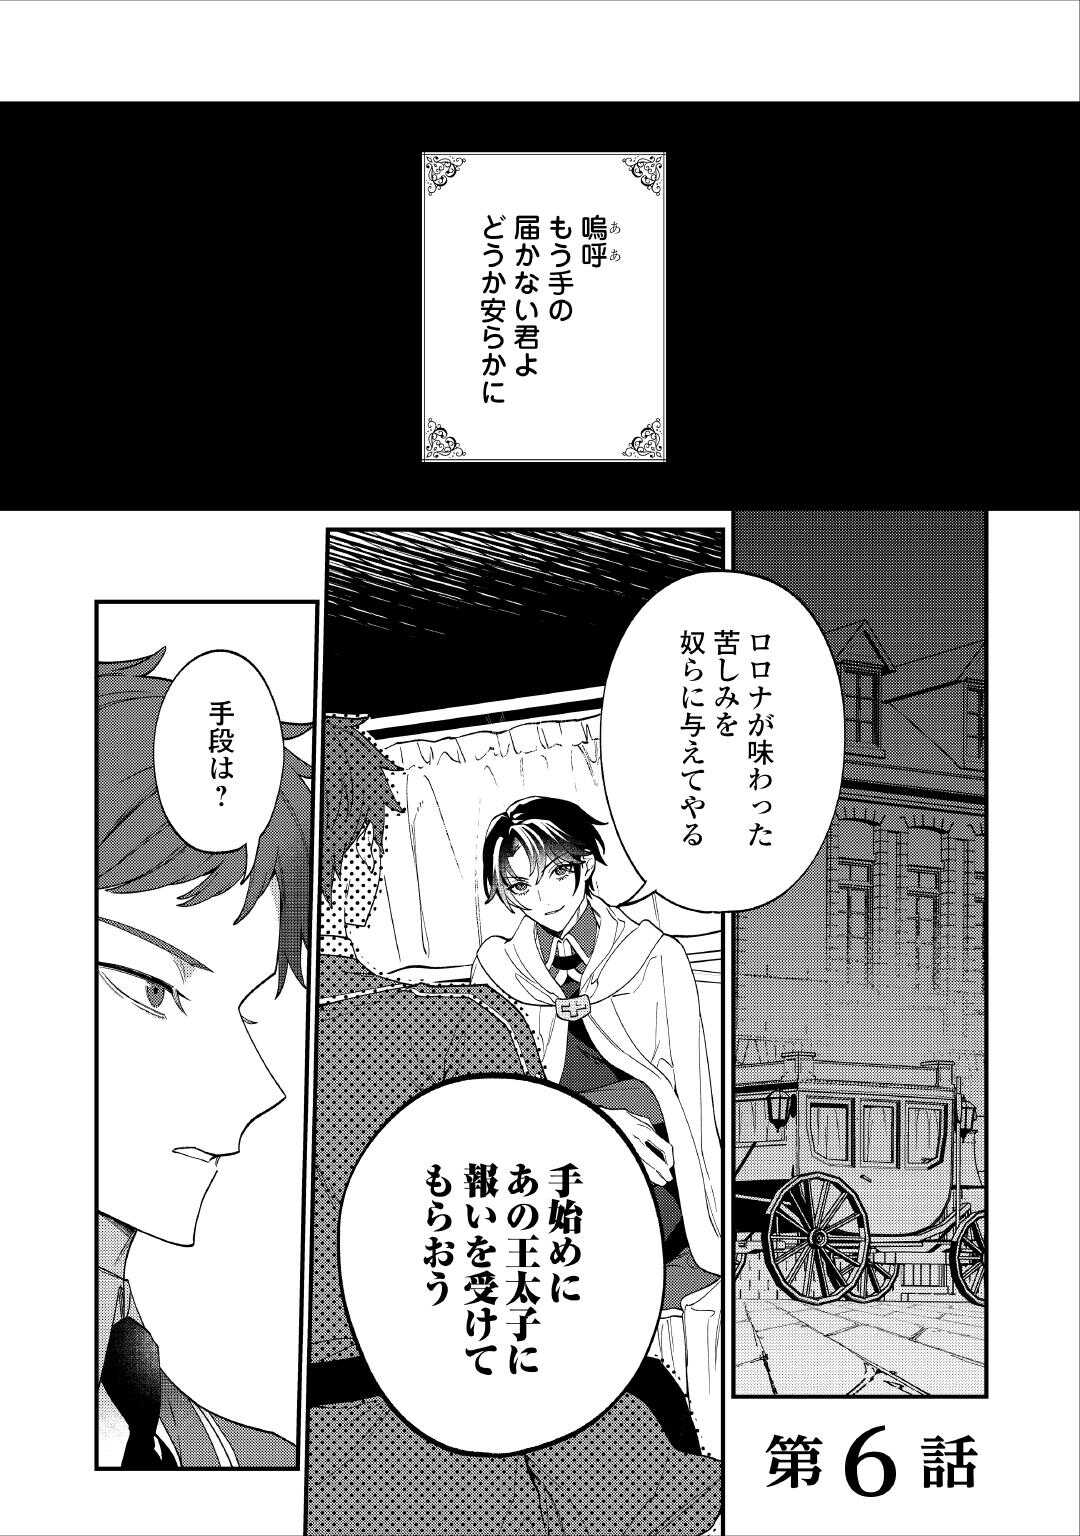 Watashi ga Shinde Manzoku desu ka? - Chapter 6 - Page 1